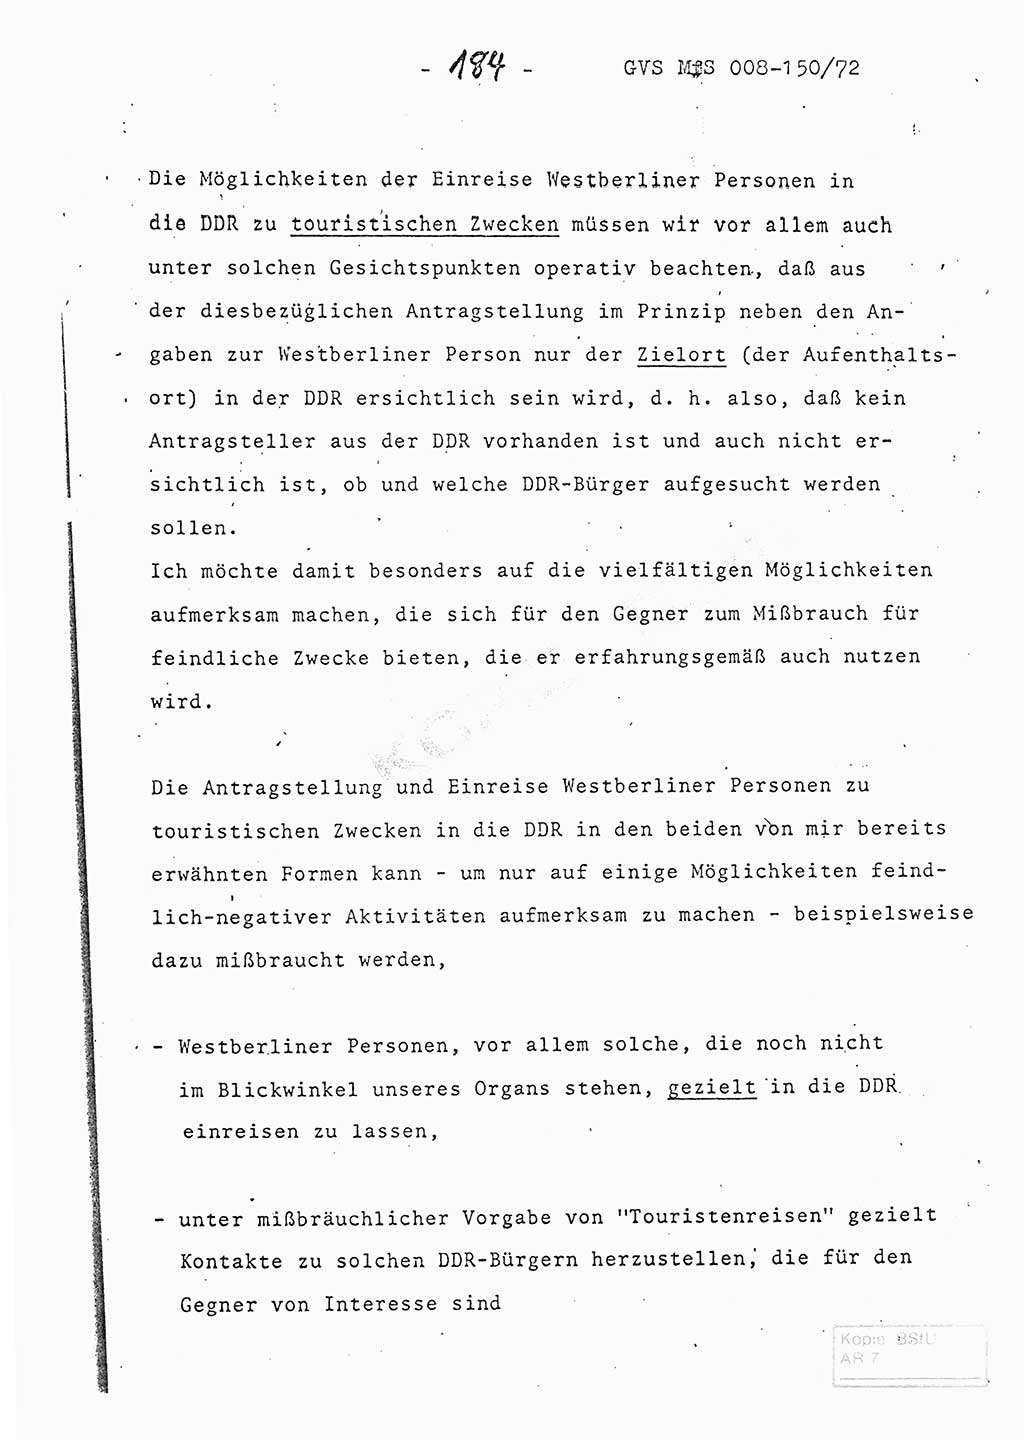 Referat (Entwurf) des Genossen Minister (Generaloberst Erich Mielke) auf der Dienstkonferenz 1972, Ministerium für Staatssicherheit (MfS) [Deutsche Demokratische Republik (DDR)], Der Minister, Geheime Verschlußsache (GVS) 008-150/72, Berlin 25.2.1972, Seite 184 (Ref. Entw. DK MfS DDR Min. GVS 008-150/72 1972, S. 184)